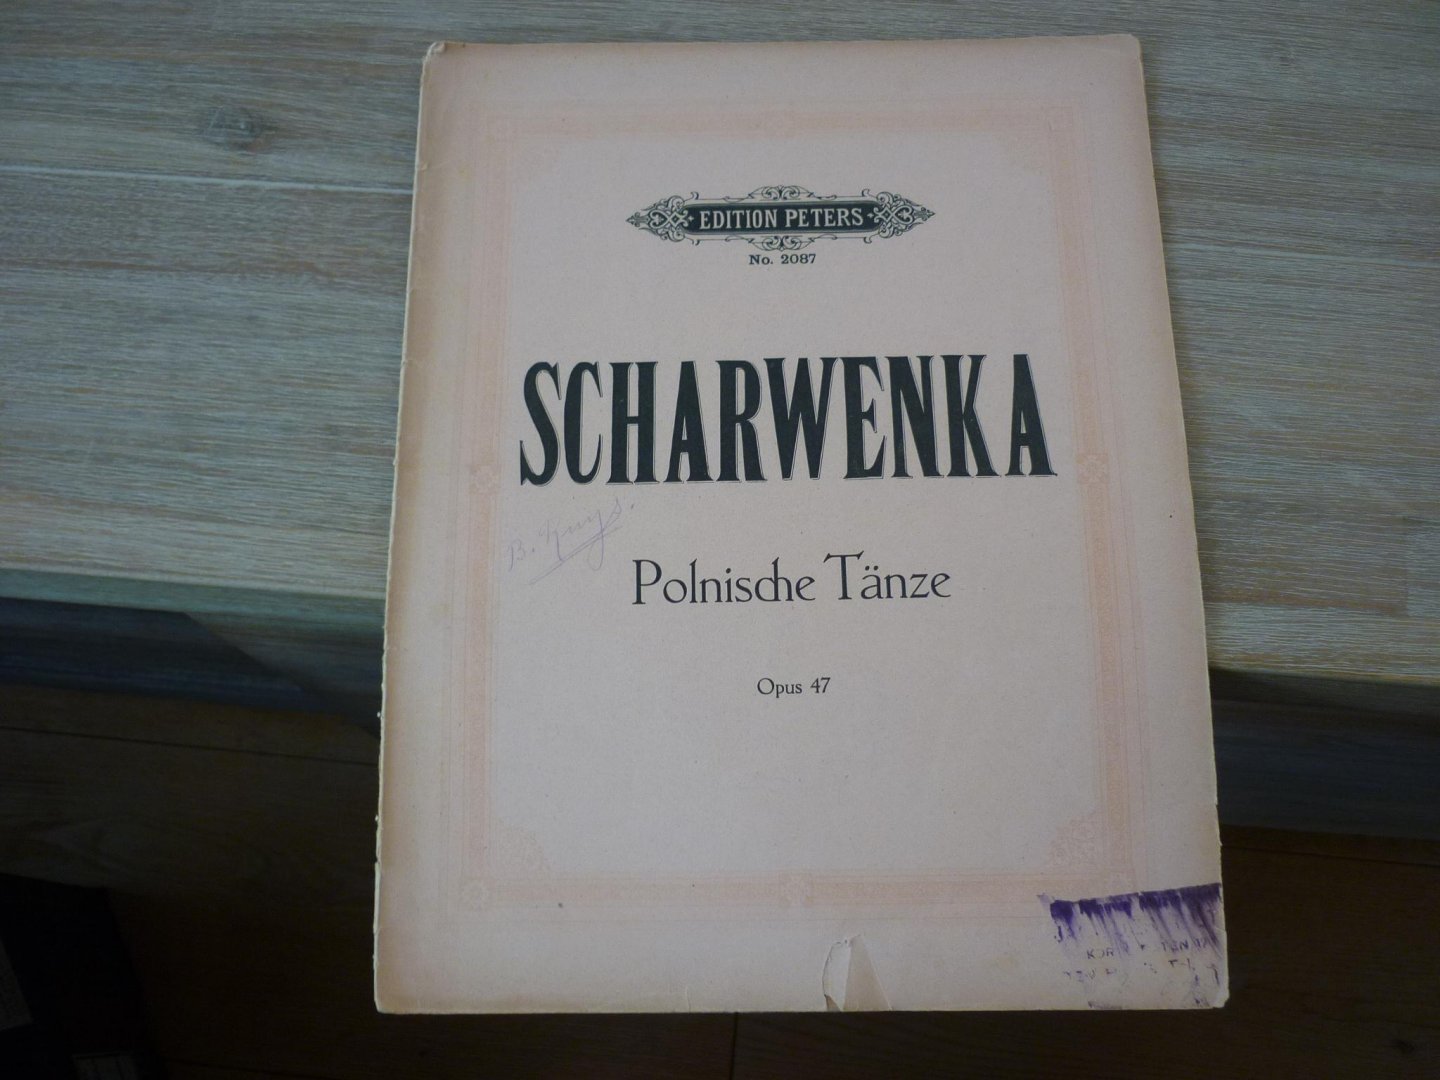 Scharwenka; Xaver - Vier Polnische Tanze; Opus 47 Fur Pianoforte